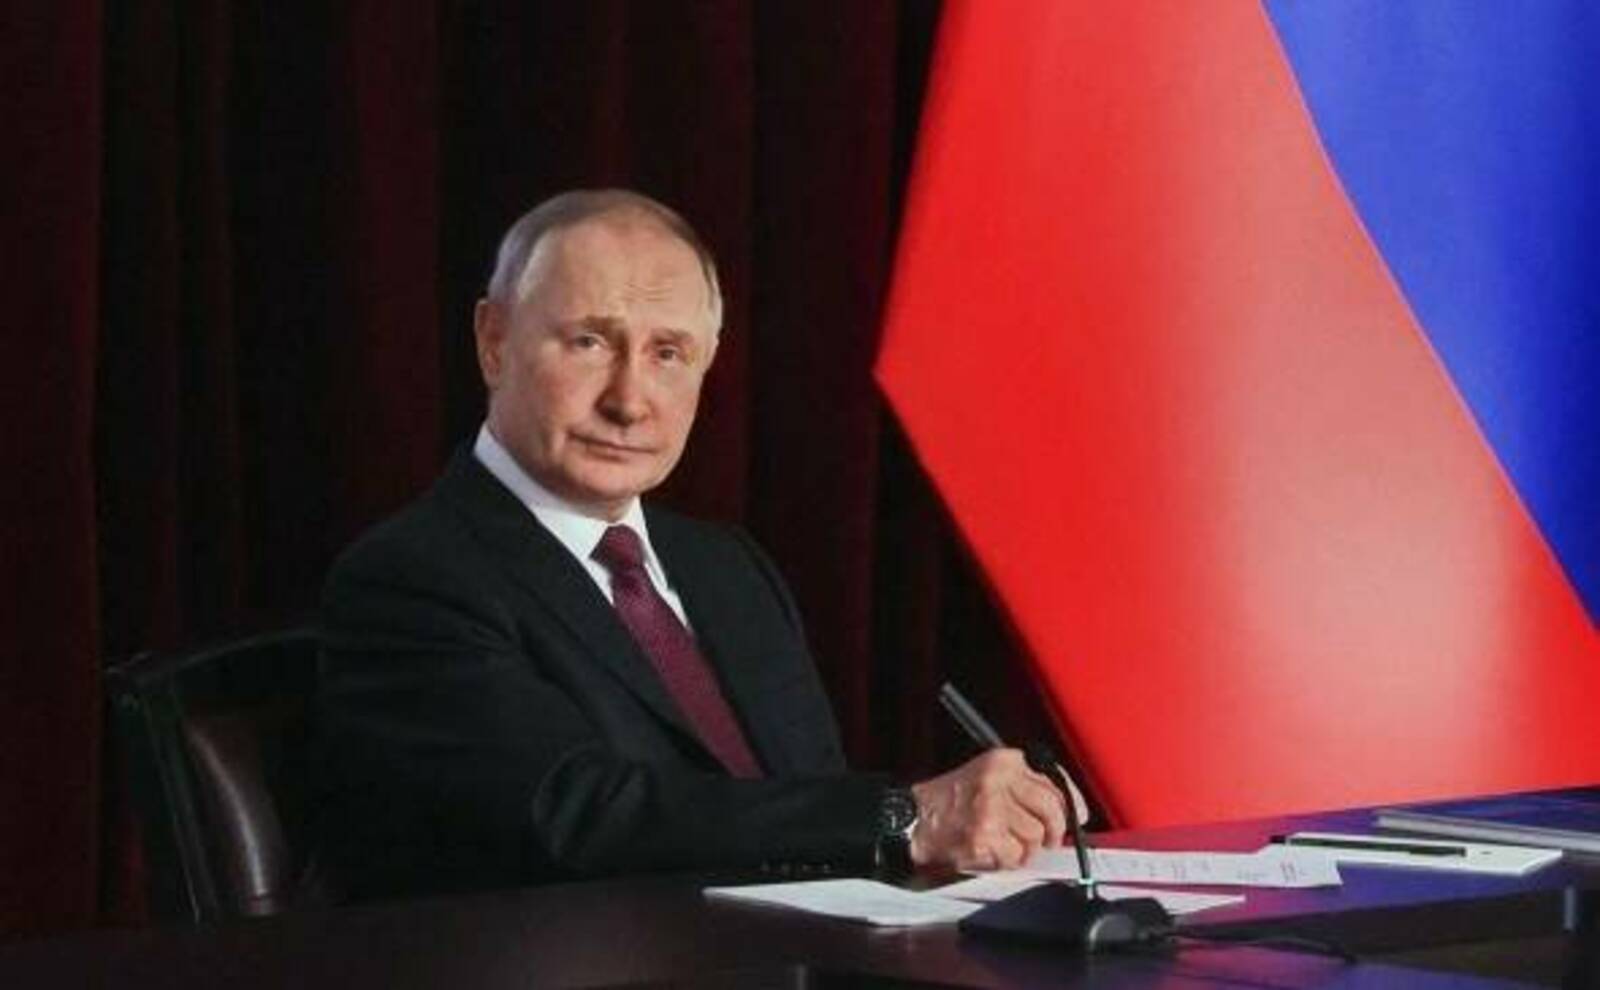 Путин призвал не расслабляться из-за введенных против России санкций